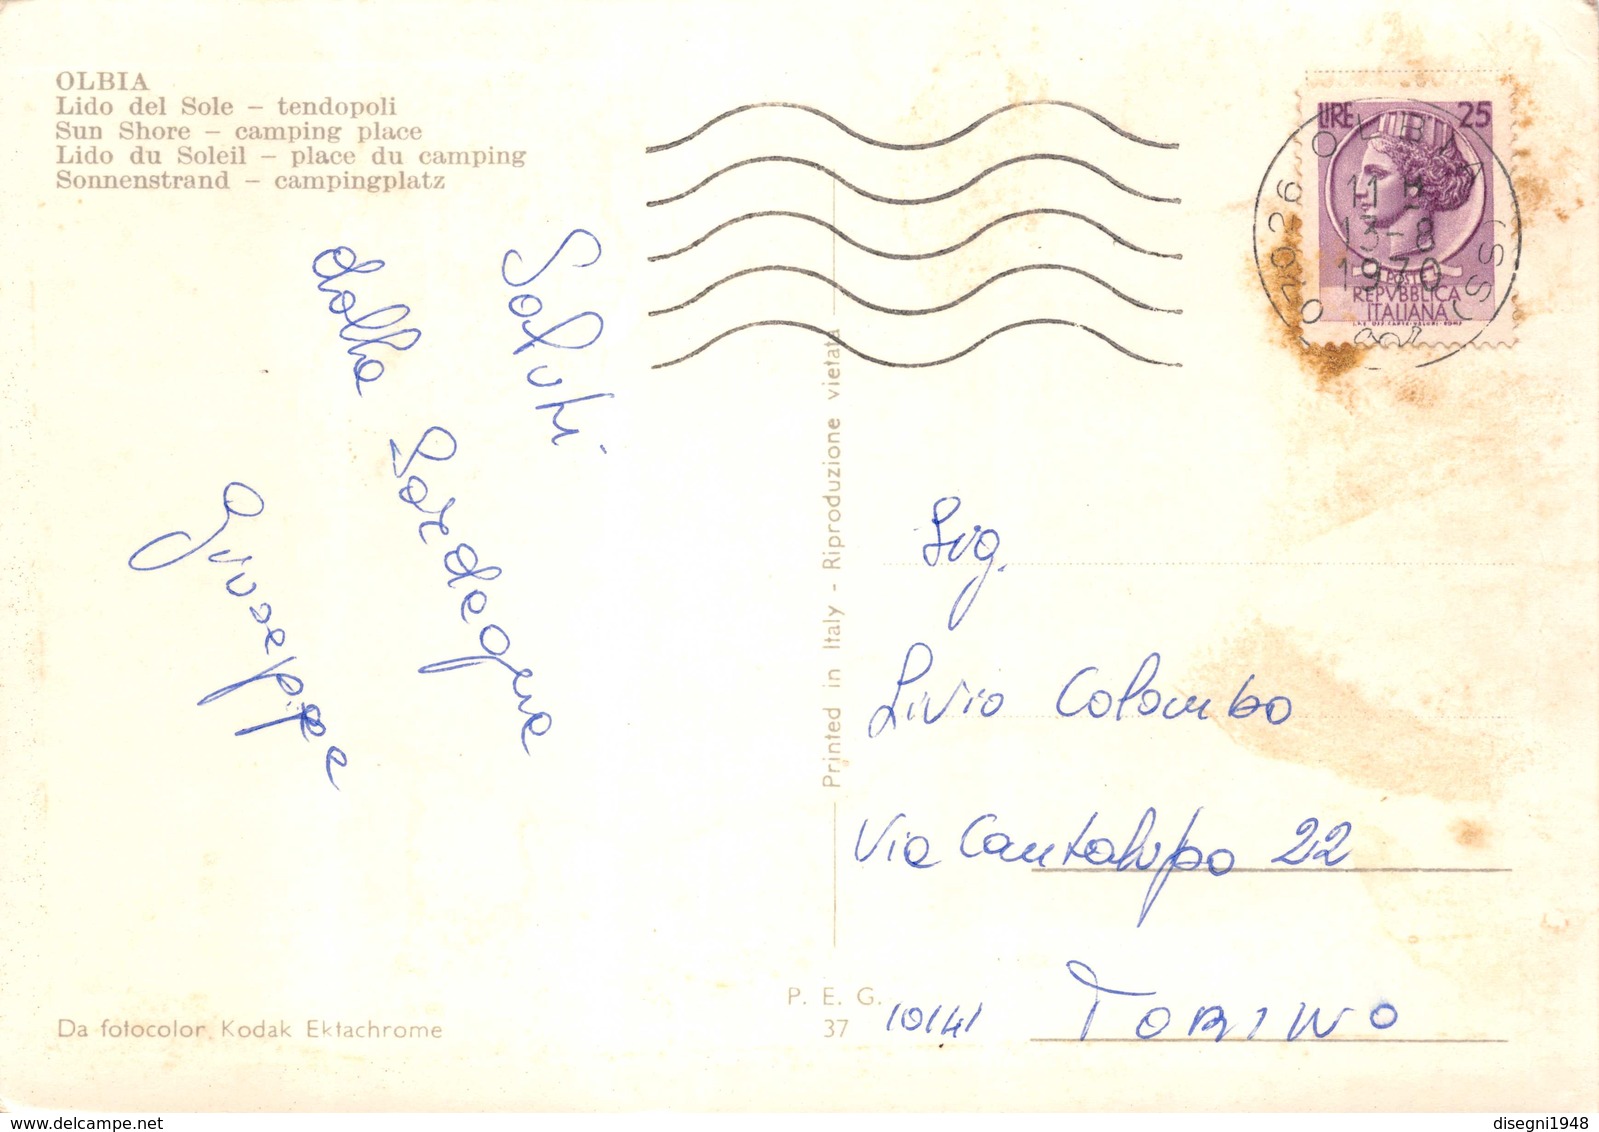 07434 "OLBIA (OT) - LIDO DEL SOLE - TENDOPOLI" CART. ILL. SPED. '70 - Olbia